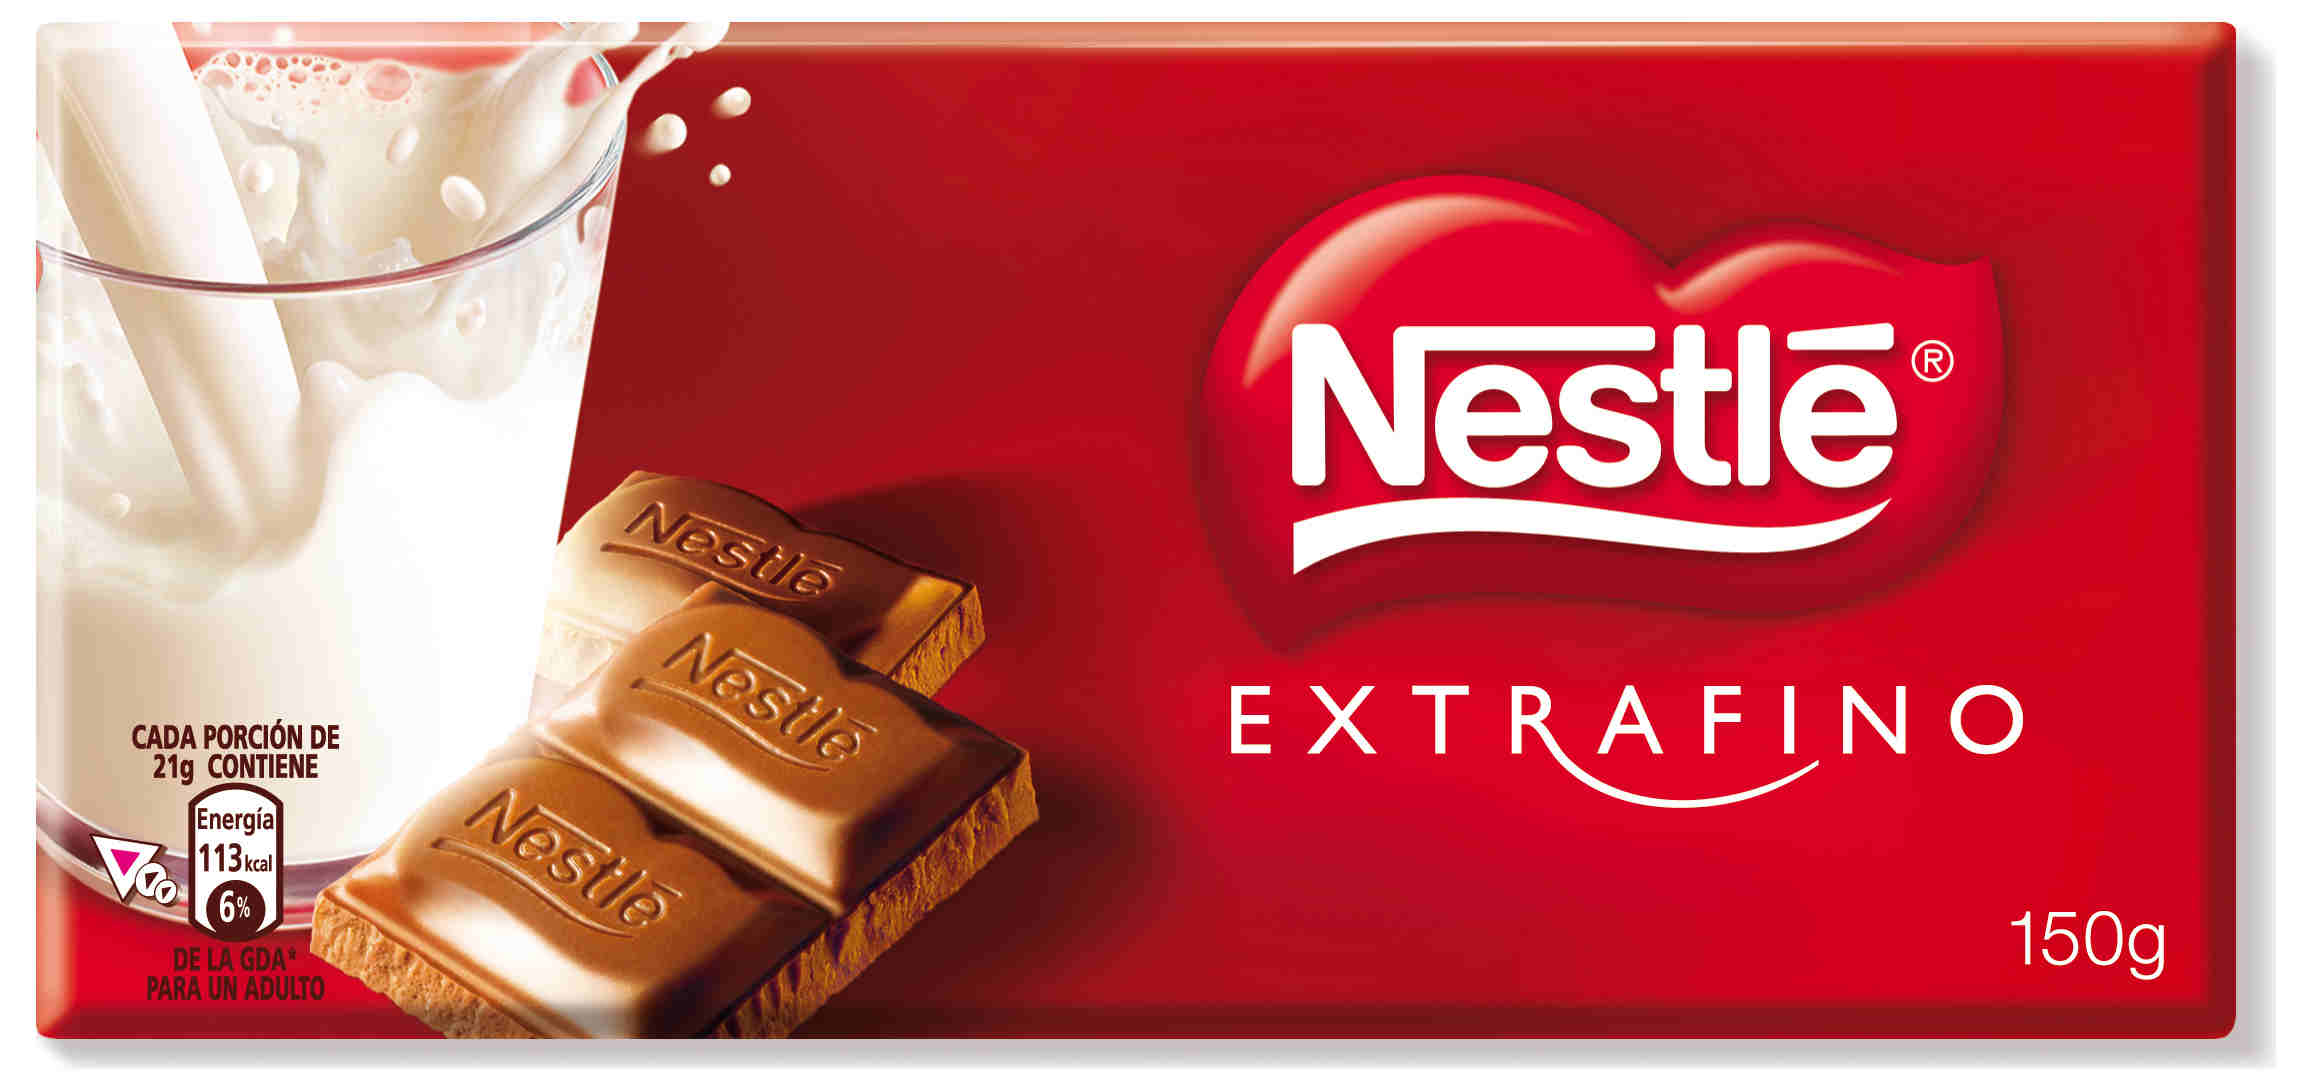 Foto Nestlé Chocolate Extrafino con Leche foto 955895